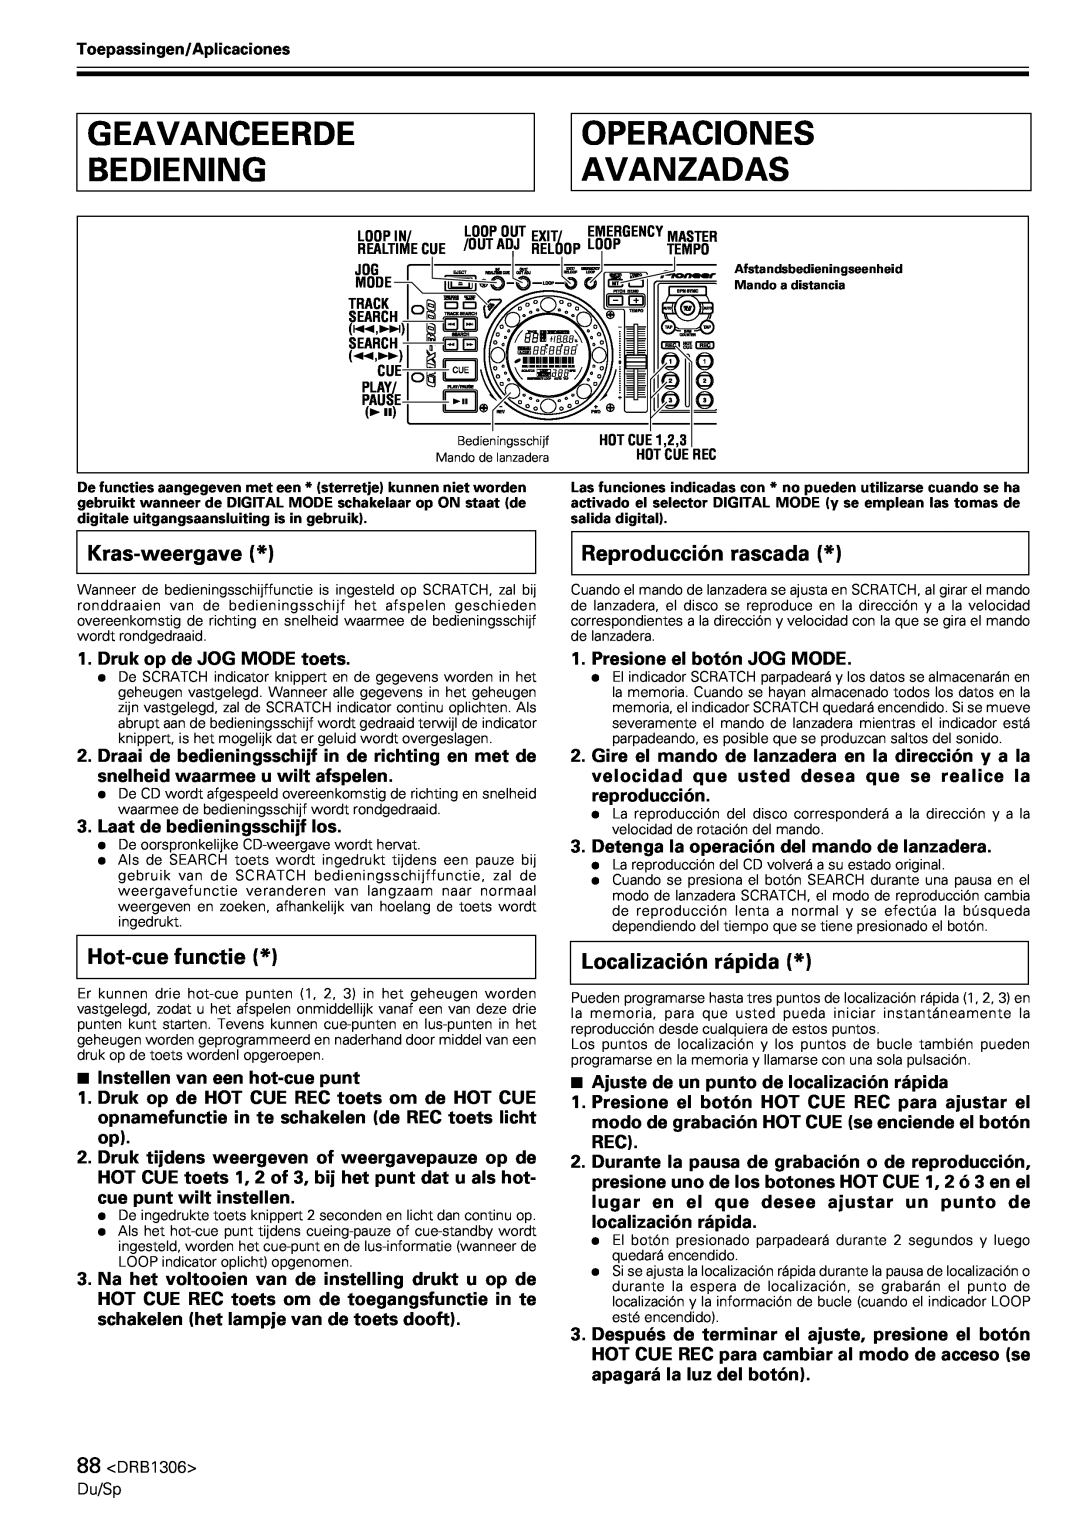 Pioneer CMX-3000 Geavanceerde Bediening, Operaciones Avanzadas, Kras-weergave, Hot-cuefunctie, Reproducción rascada 